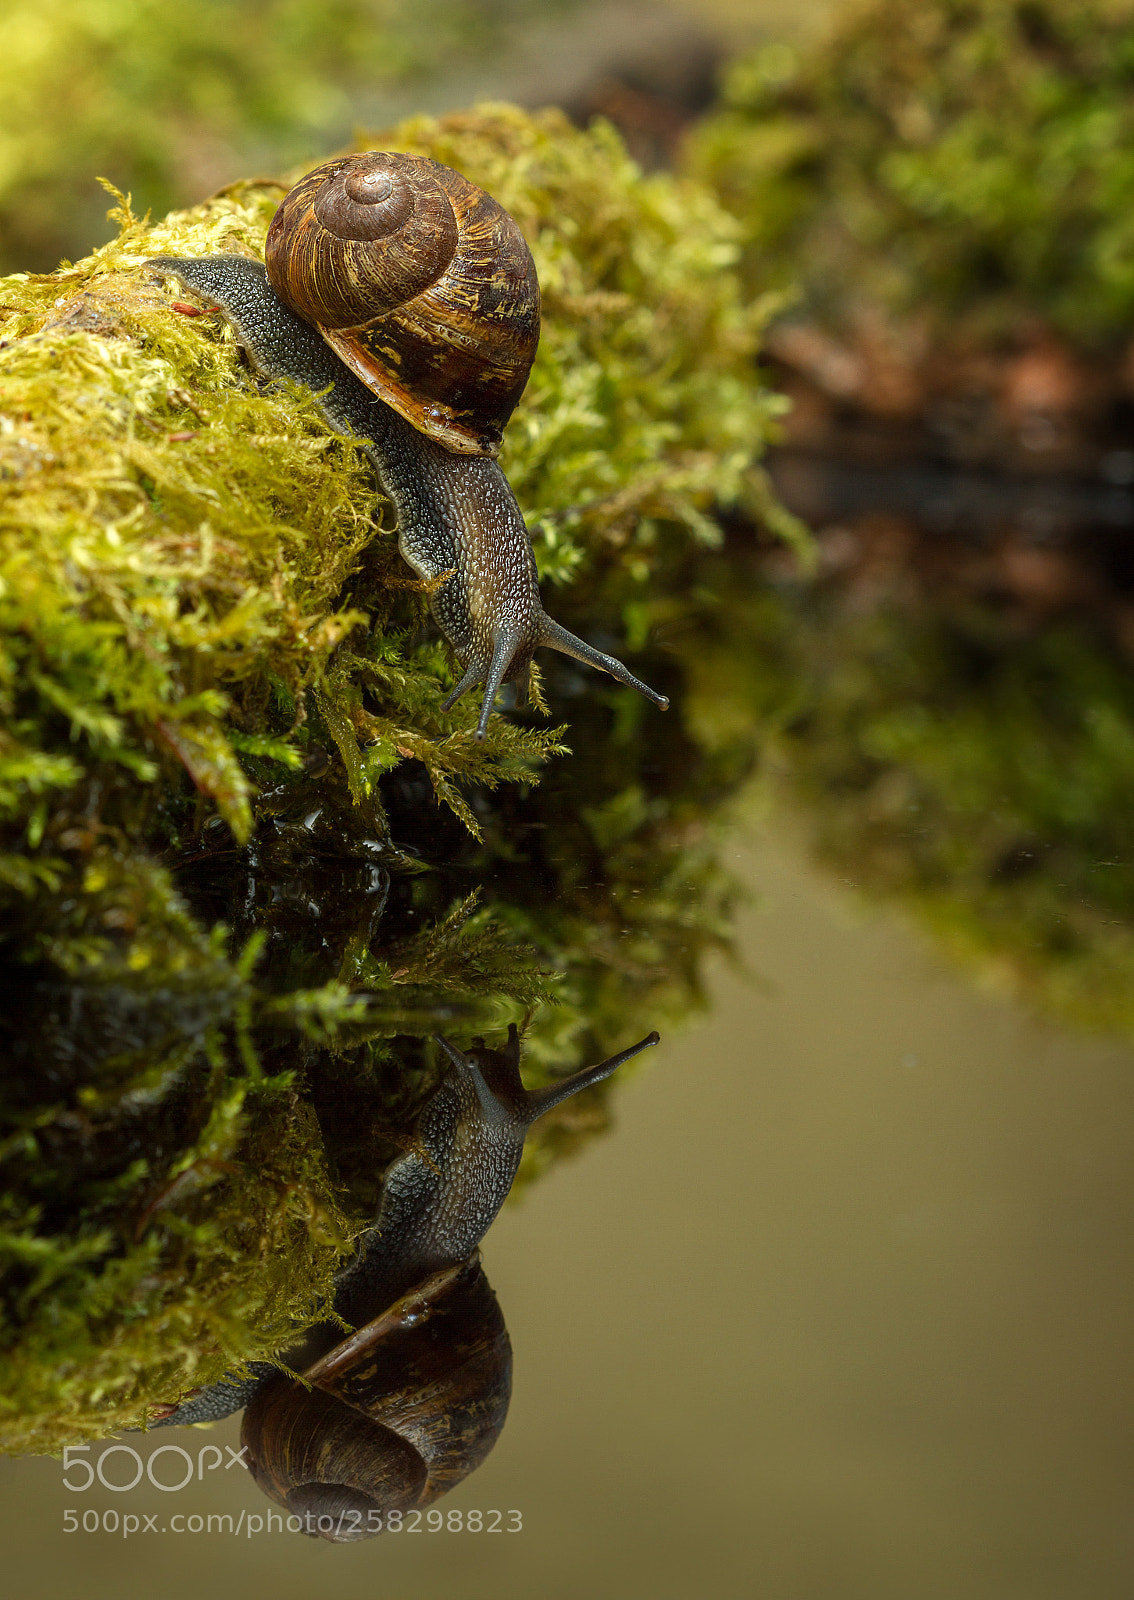 Canon EOS 7D sample photo. Garden snail photography